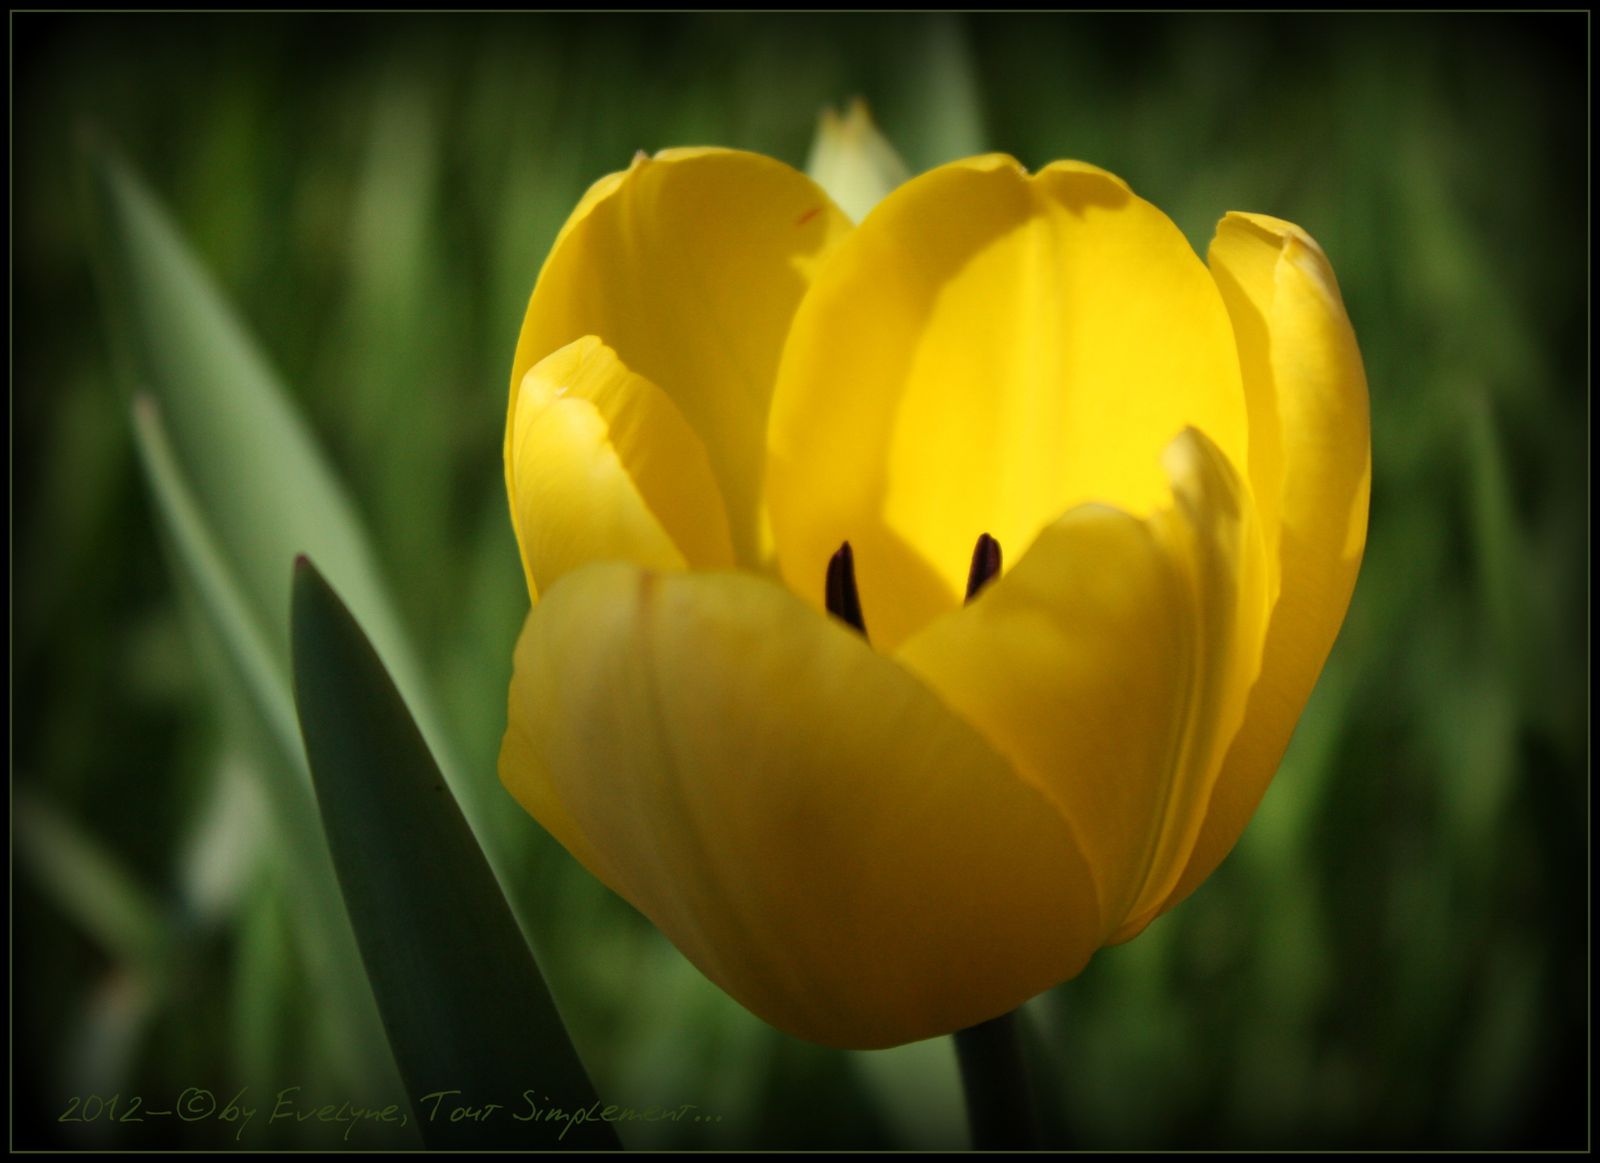 La Tulipe Jaune... - ©By Evelyne, Tout Simplement..